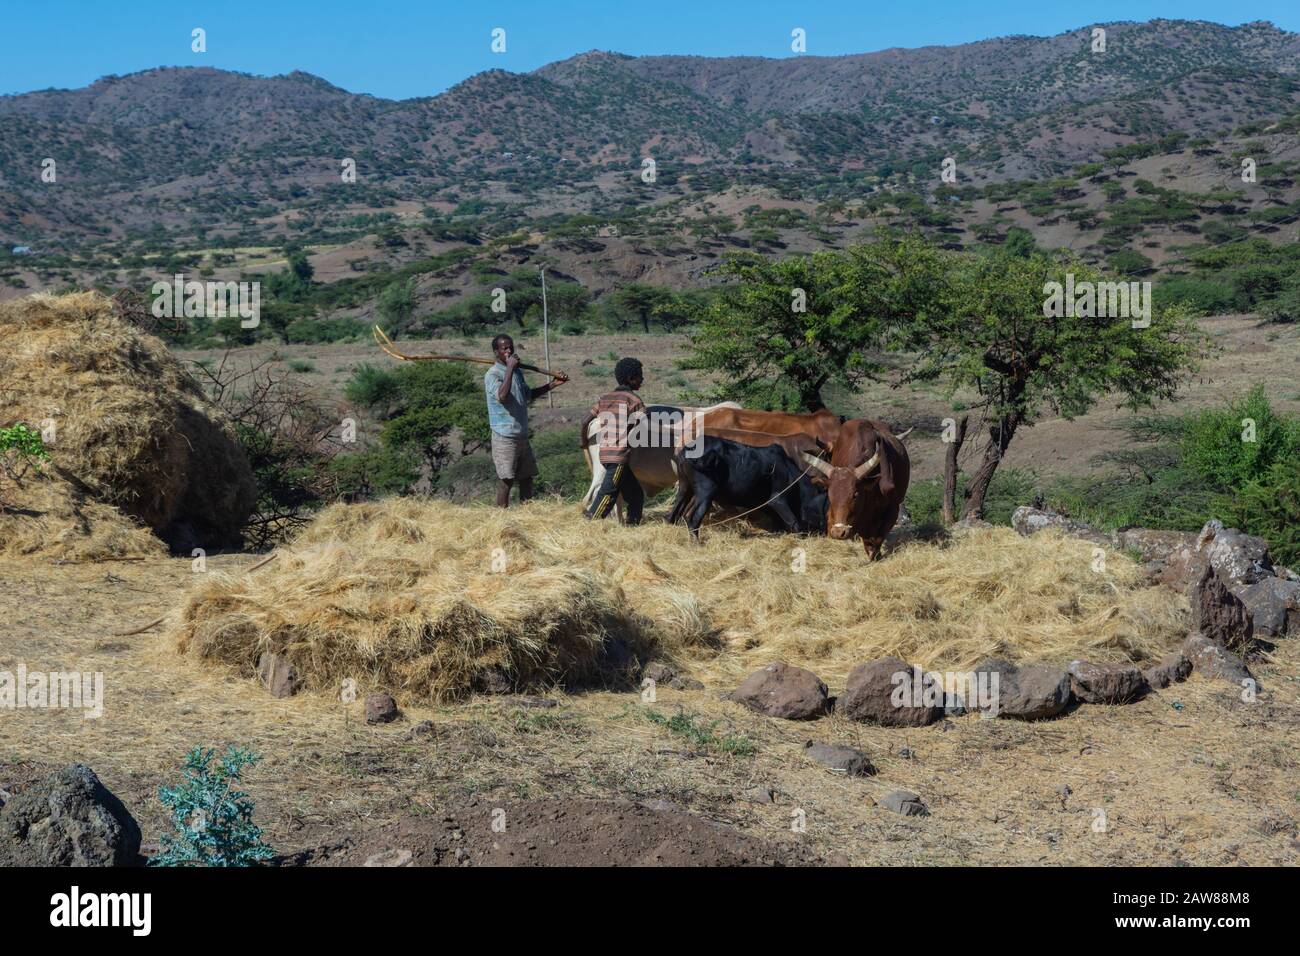 Lalibela, Ethiopie - Nov 2018: Deux hommes flirtent avec les vaches. Le teff est une céréale endémique à l'Ethiopie et largement utilisée dans la nourriture Banque D'Images